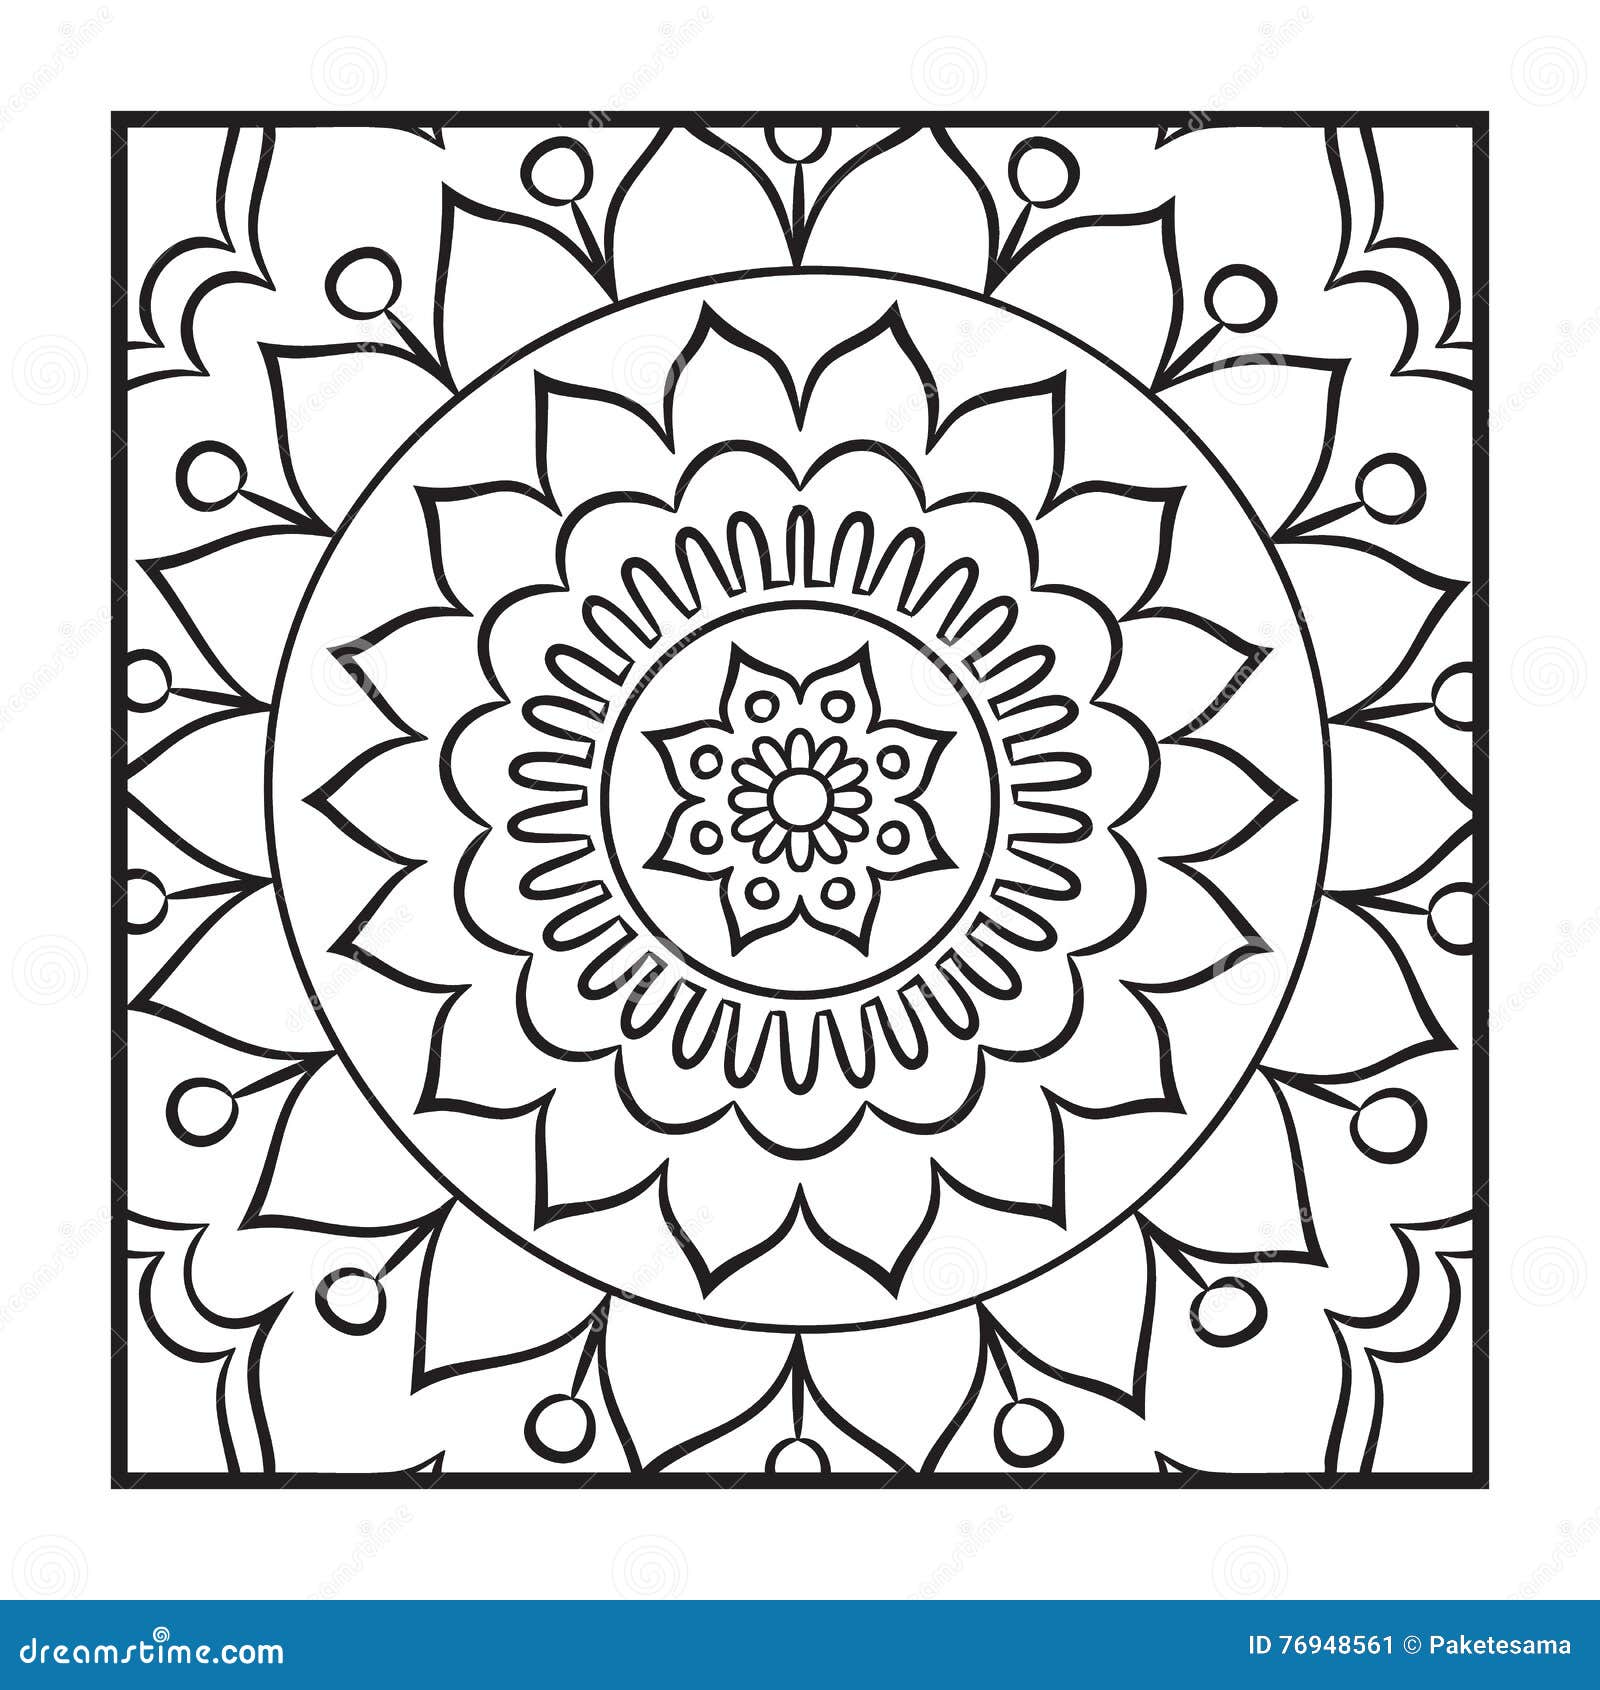 Download Klotter Mandala Coloring Page Vektor Illustrationer ...